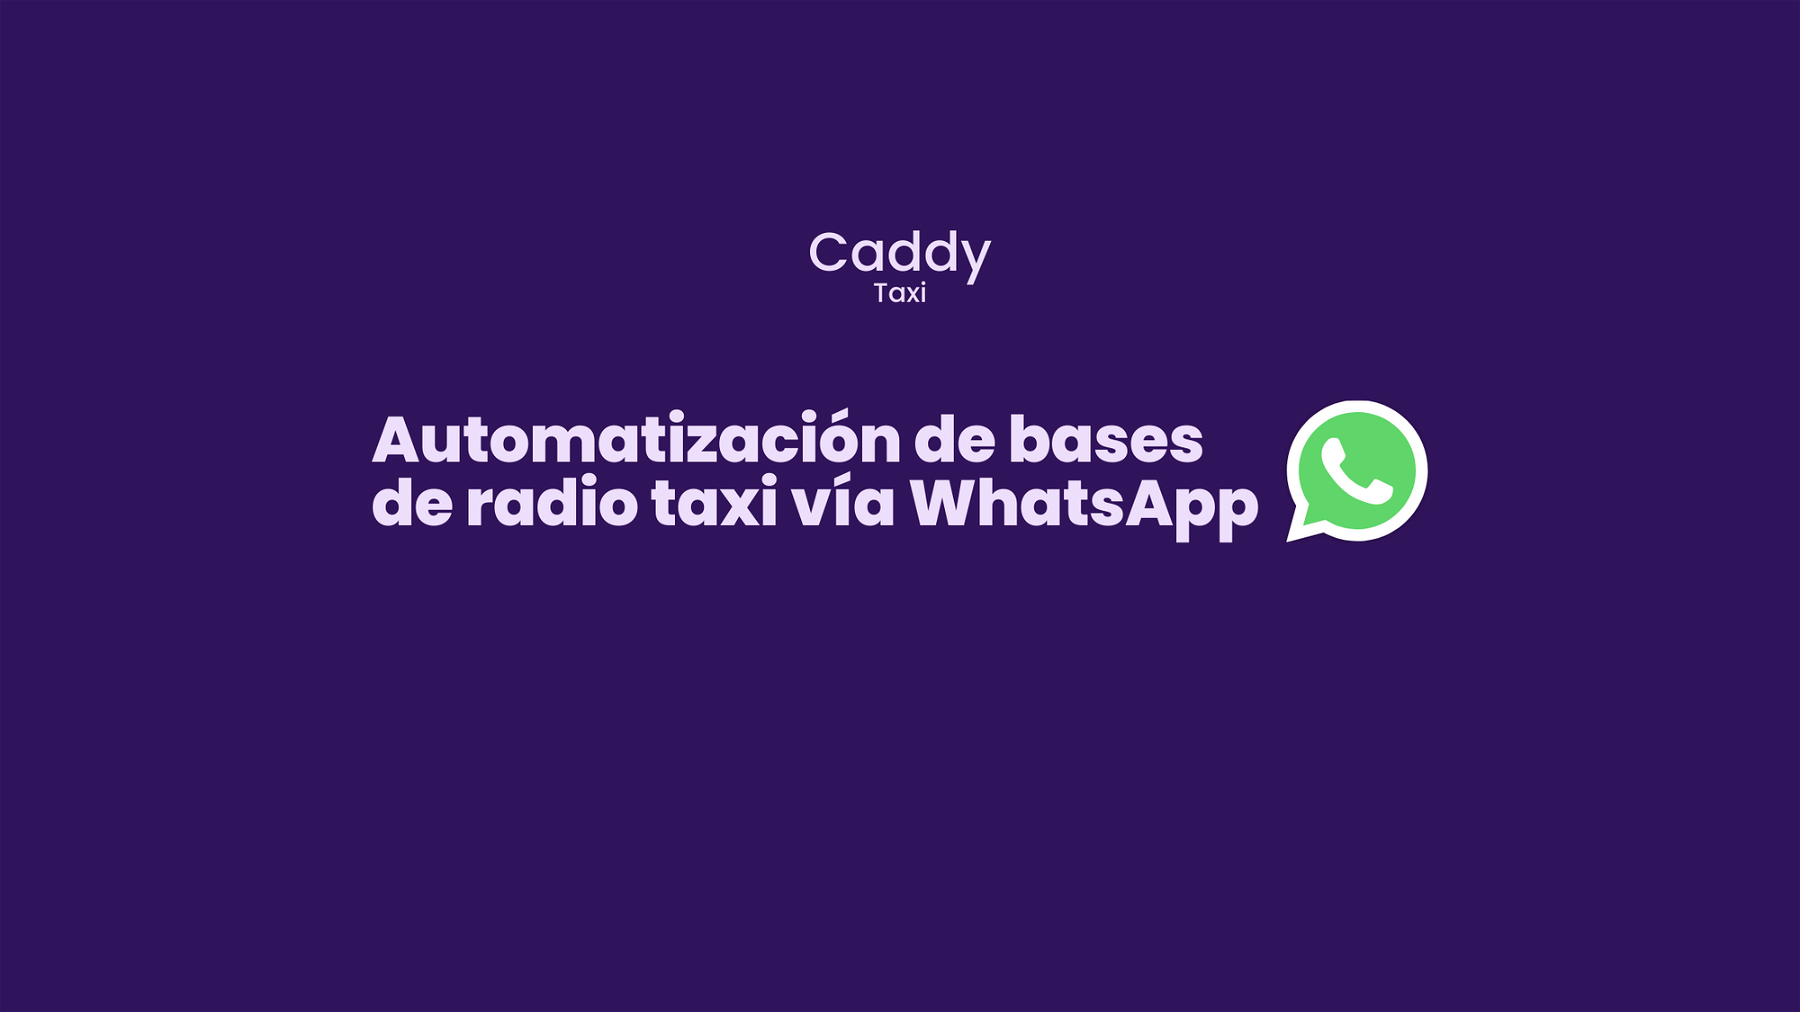 Automatizaci贸n de bases de radio taxi v铆a WhatsApp